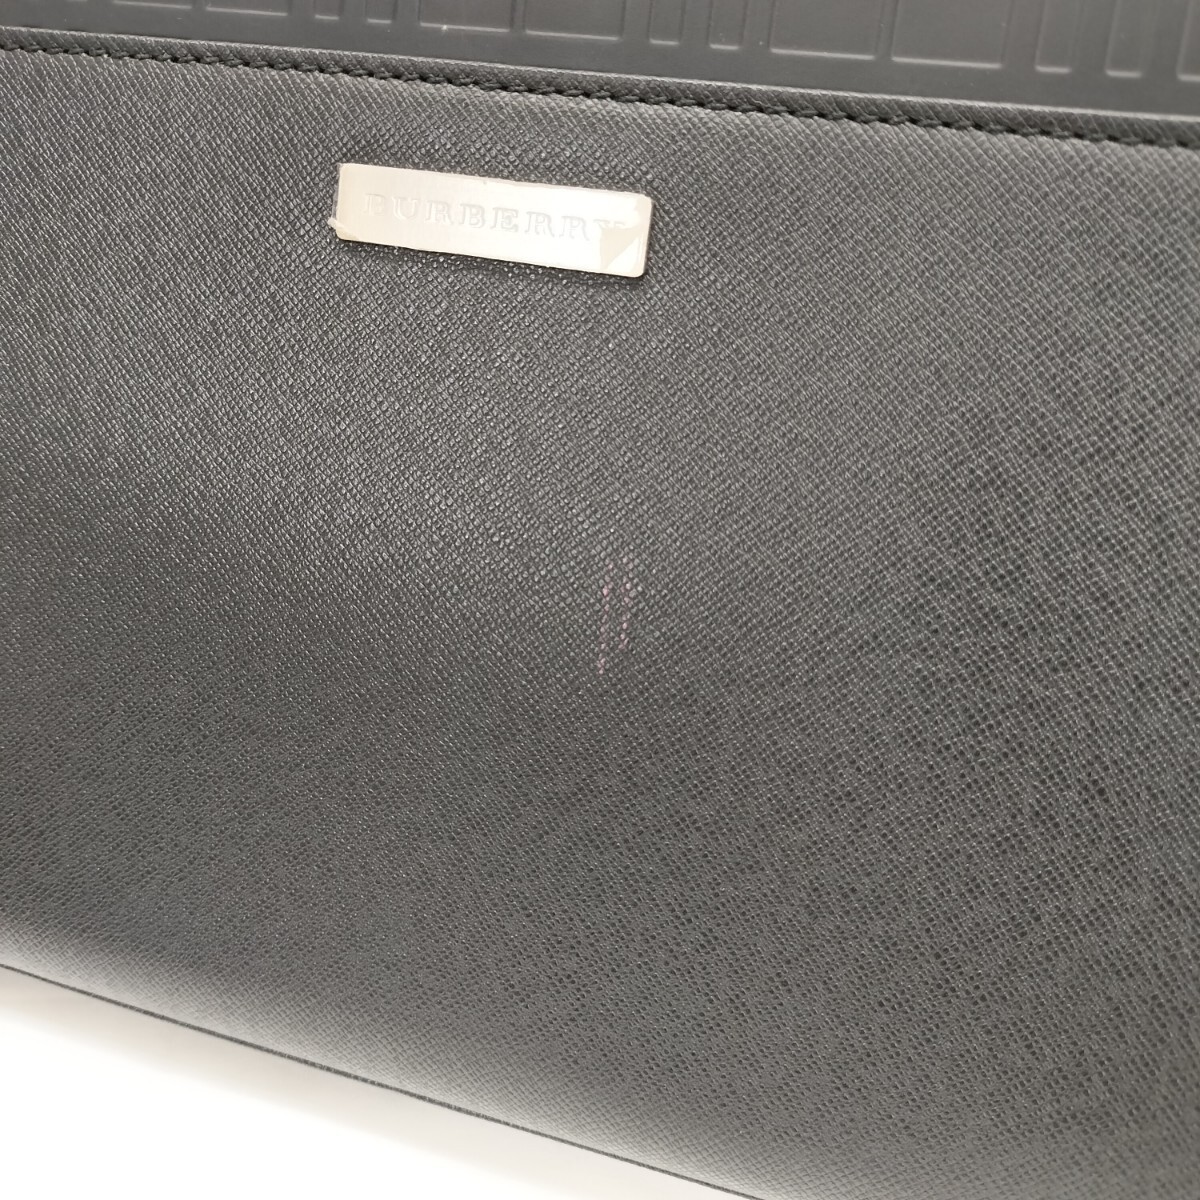 24*5015 BURBERRY ручная сумочка клатч держать рука иметь чёрный кожа Logo plate проверка серебряный Logo 